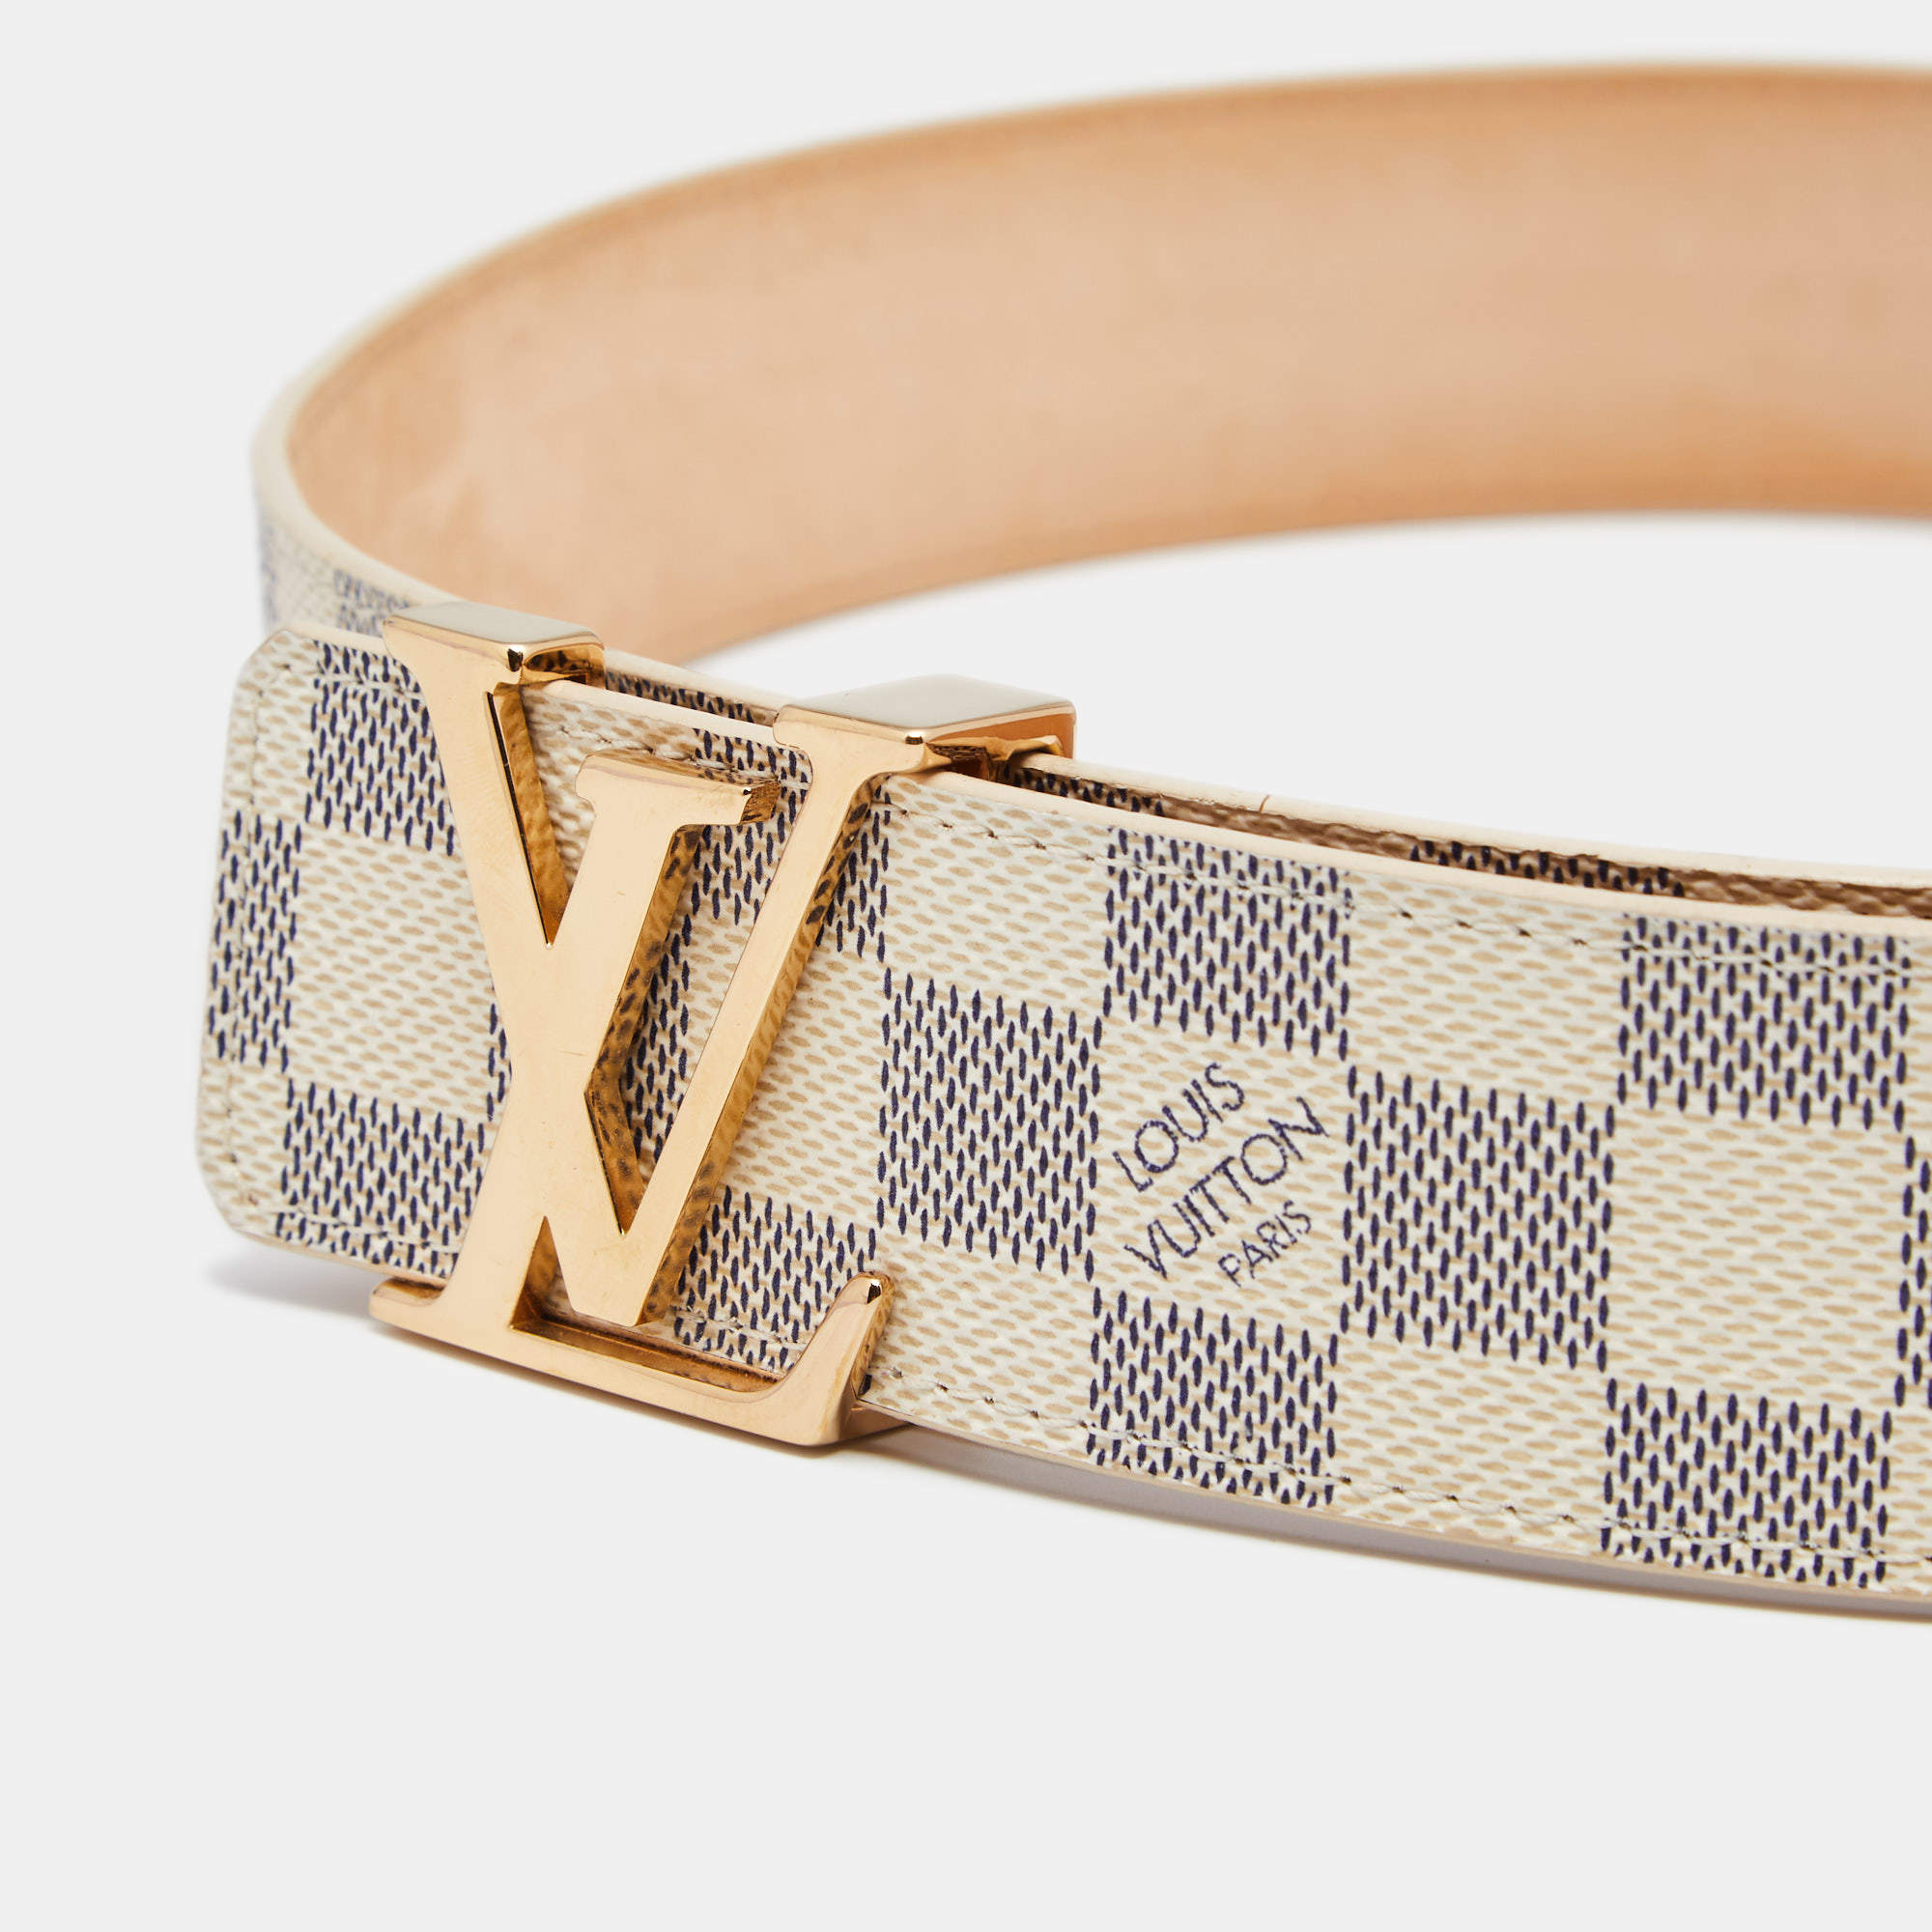 Louis Vuitton Damier Azur Canvas Belt - Size 95 ○ Labellov ○ Buy